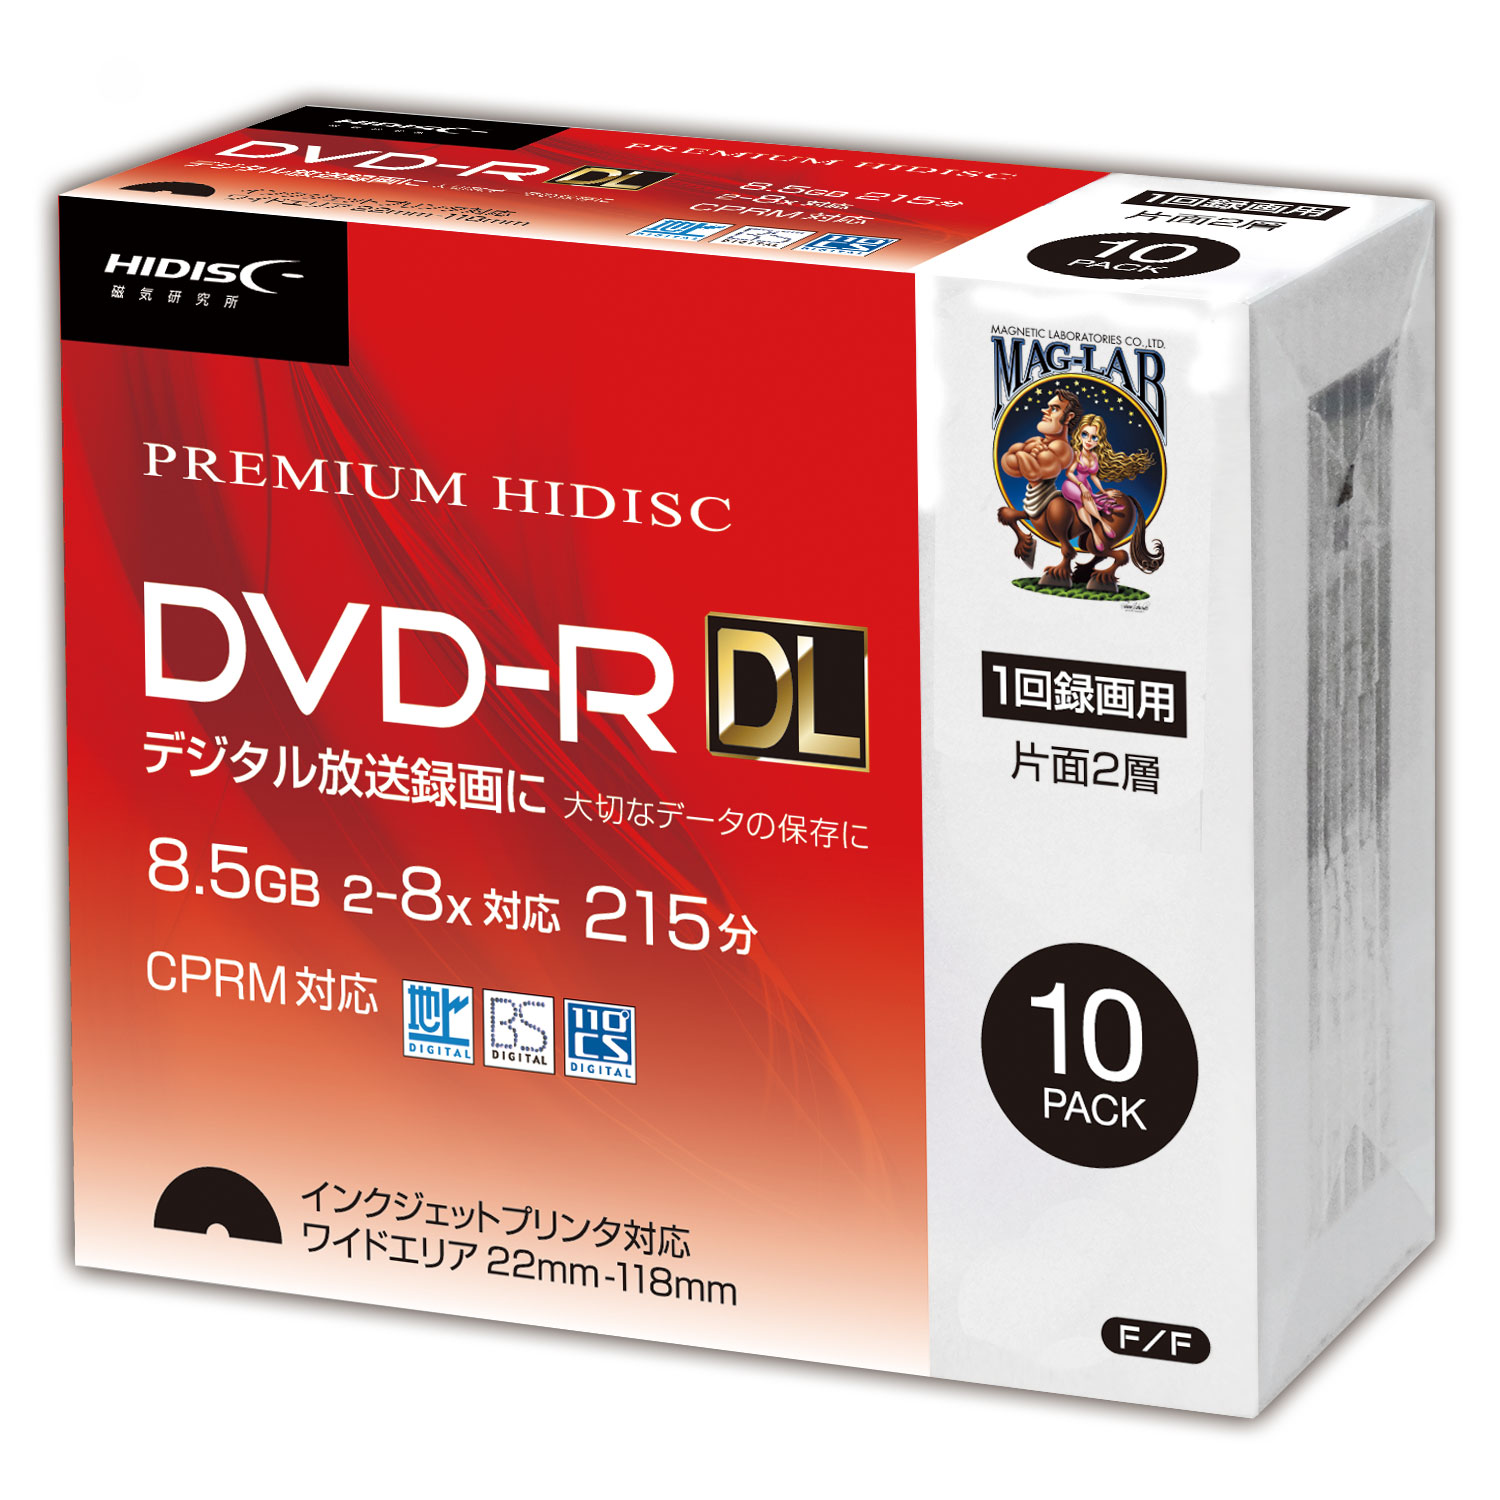 HIDISC DVD-R DL 8倍速対応 8.5GB 1回 CPRM対応 録画用 インクジェット